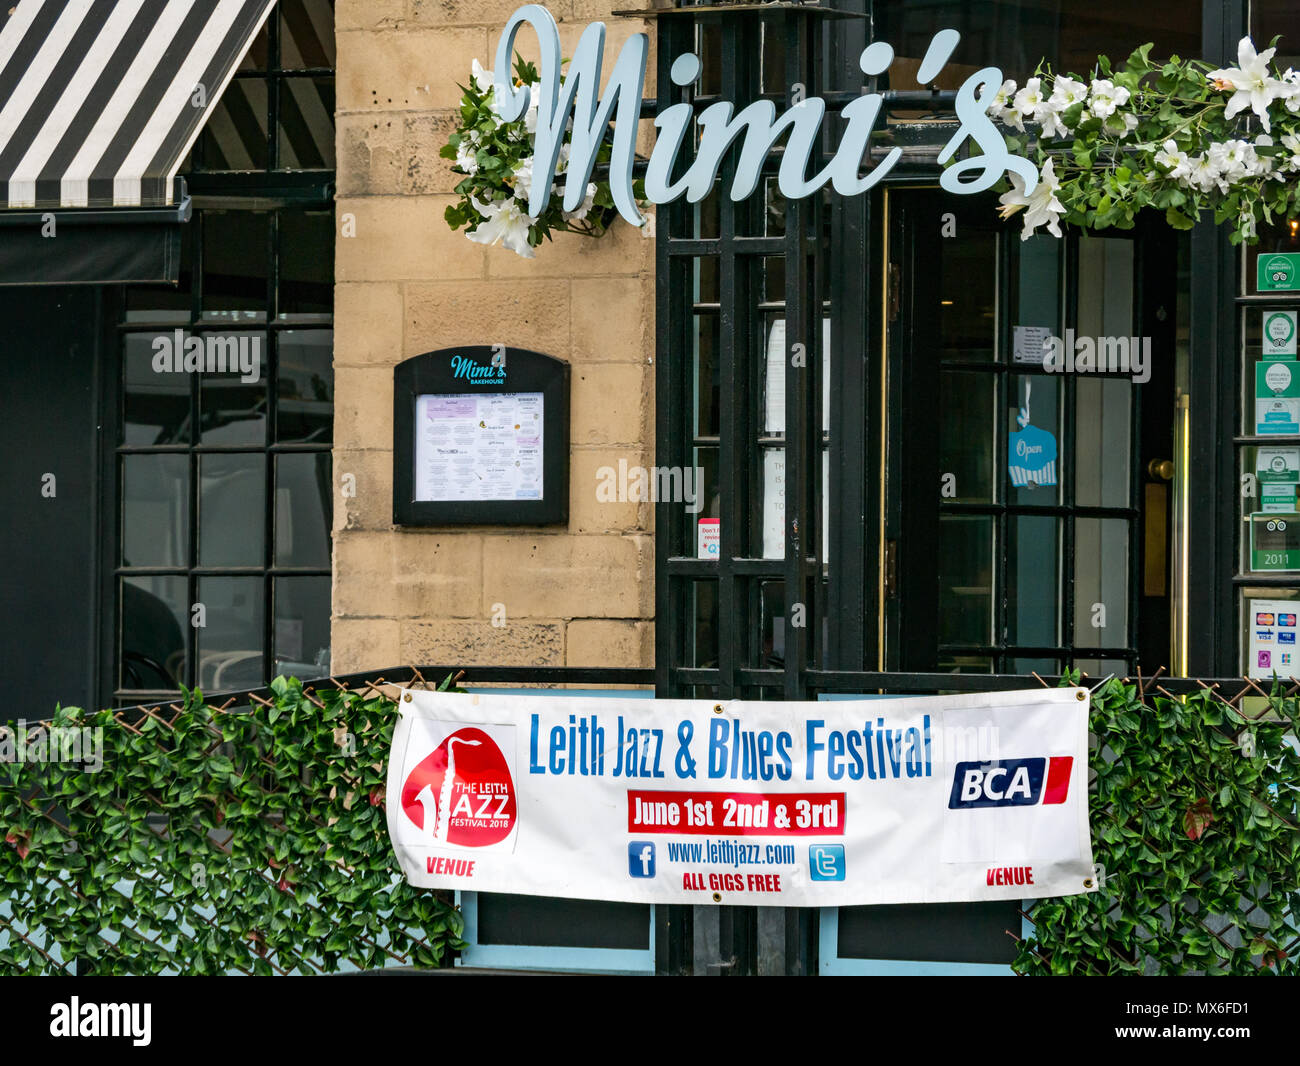 Leith Jazz & Blues Festival de musique live dans les restaurants et bars par l'eau de Leith, 3e juin 2018. La Rive, Leith, Edinburgh, Ecosse, Royaume-Uni. Le Jazz and Blues Festival se déroule sur 3 jours de semaine. La bannière affichée à l'extérieur du festival Mimi's Cafe Fournil Banque D'Images